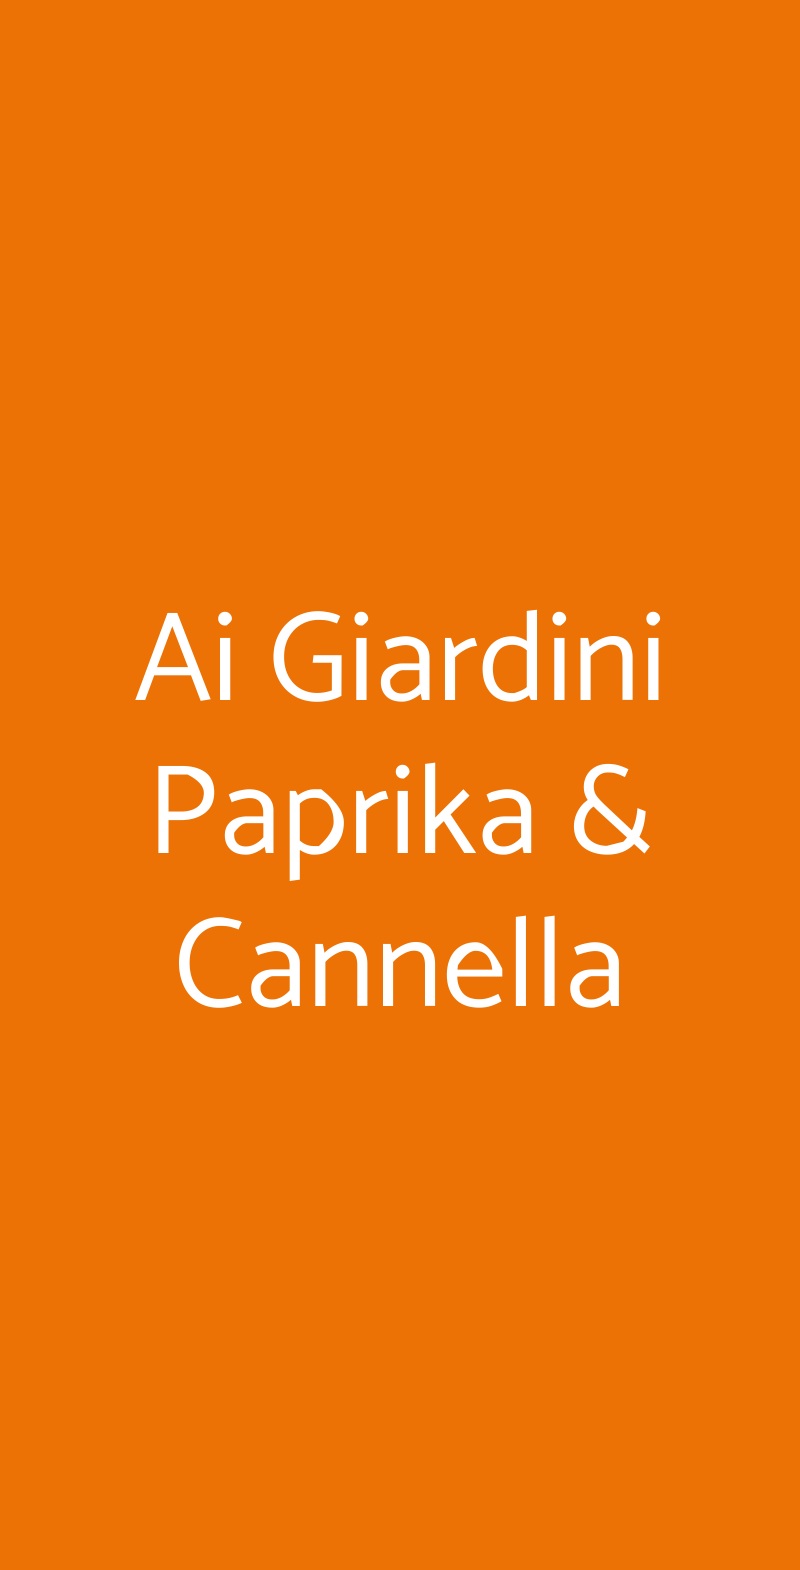 Ai Giardini Paprika & Cannella Milano menù 1 pagina